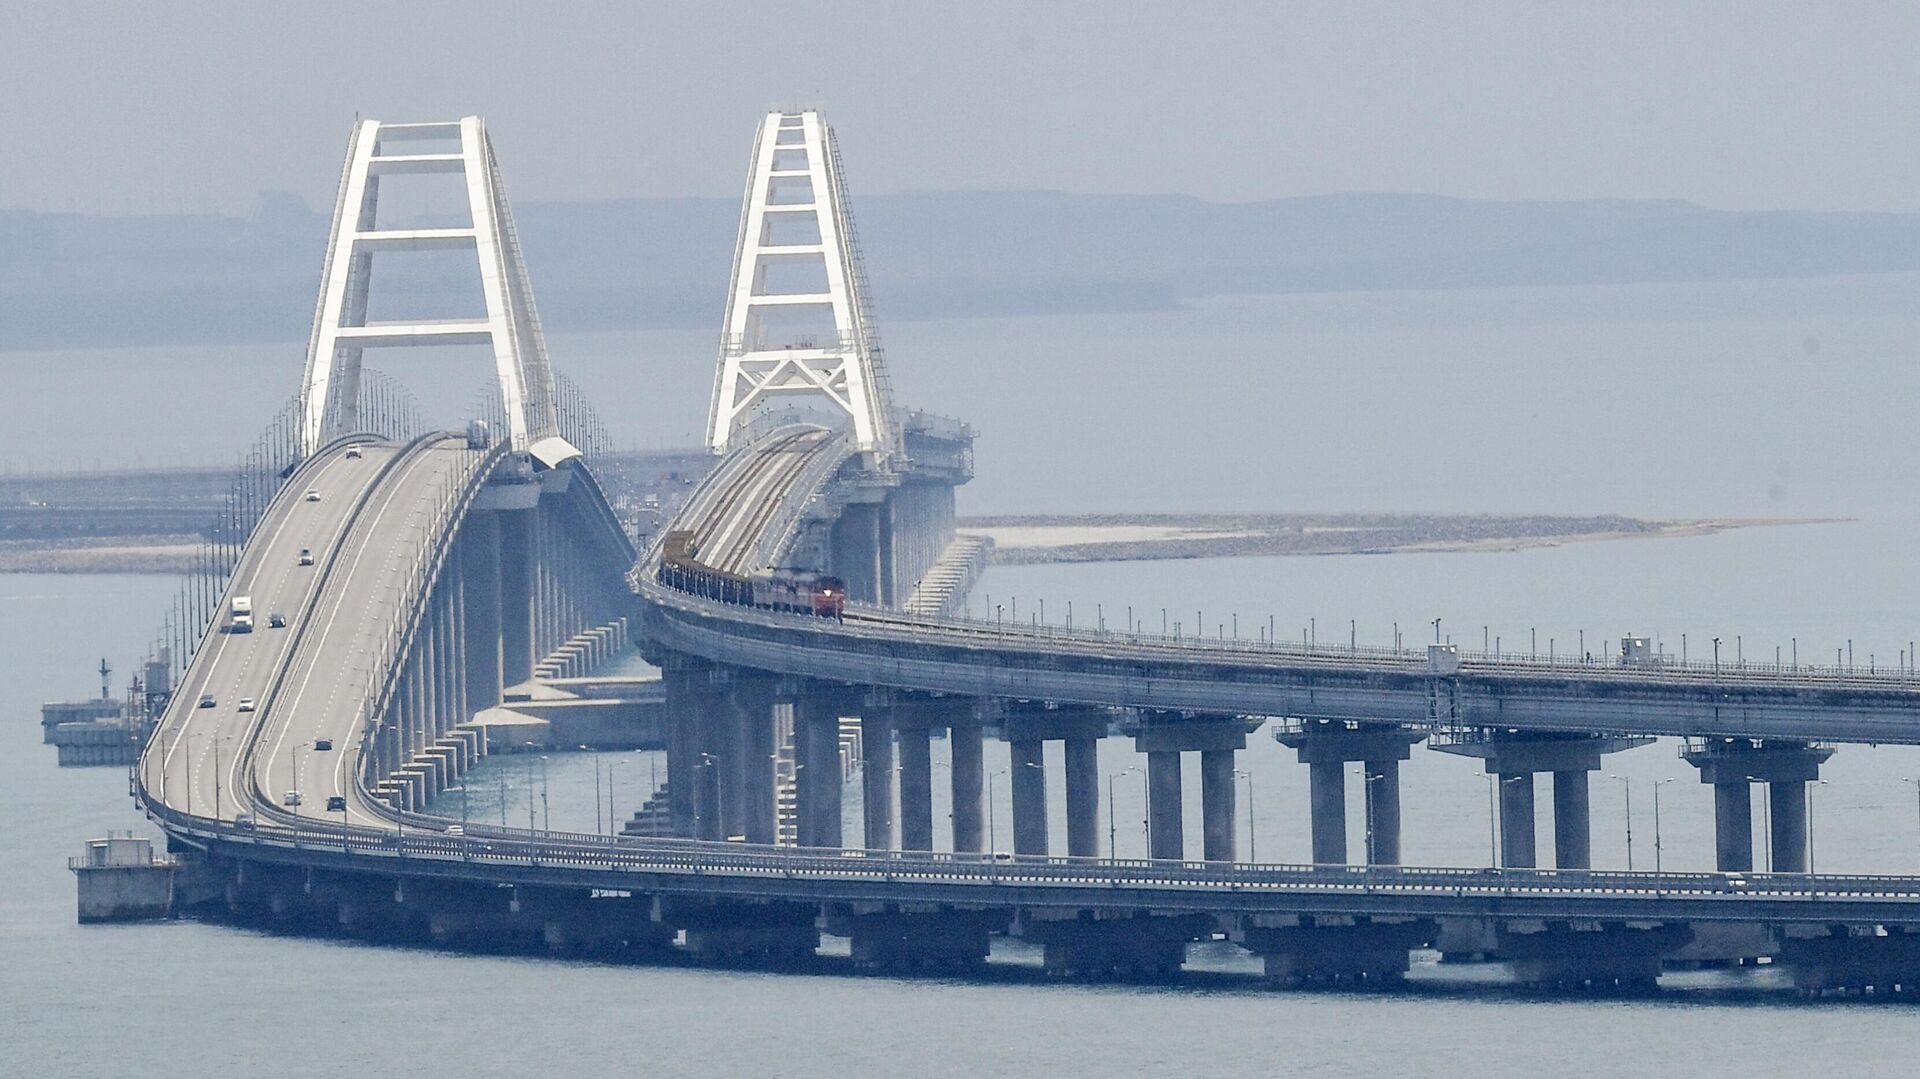 Оперштаб: Крымский мост временно закрыт, звучит сигнал воздушной тревоги